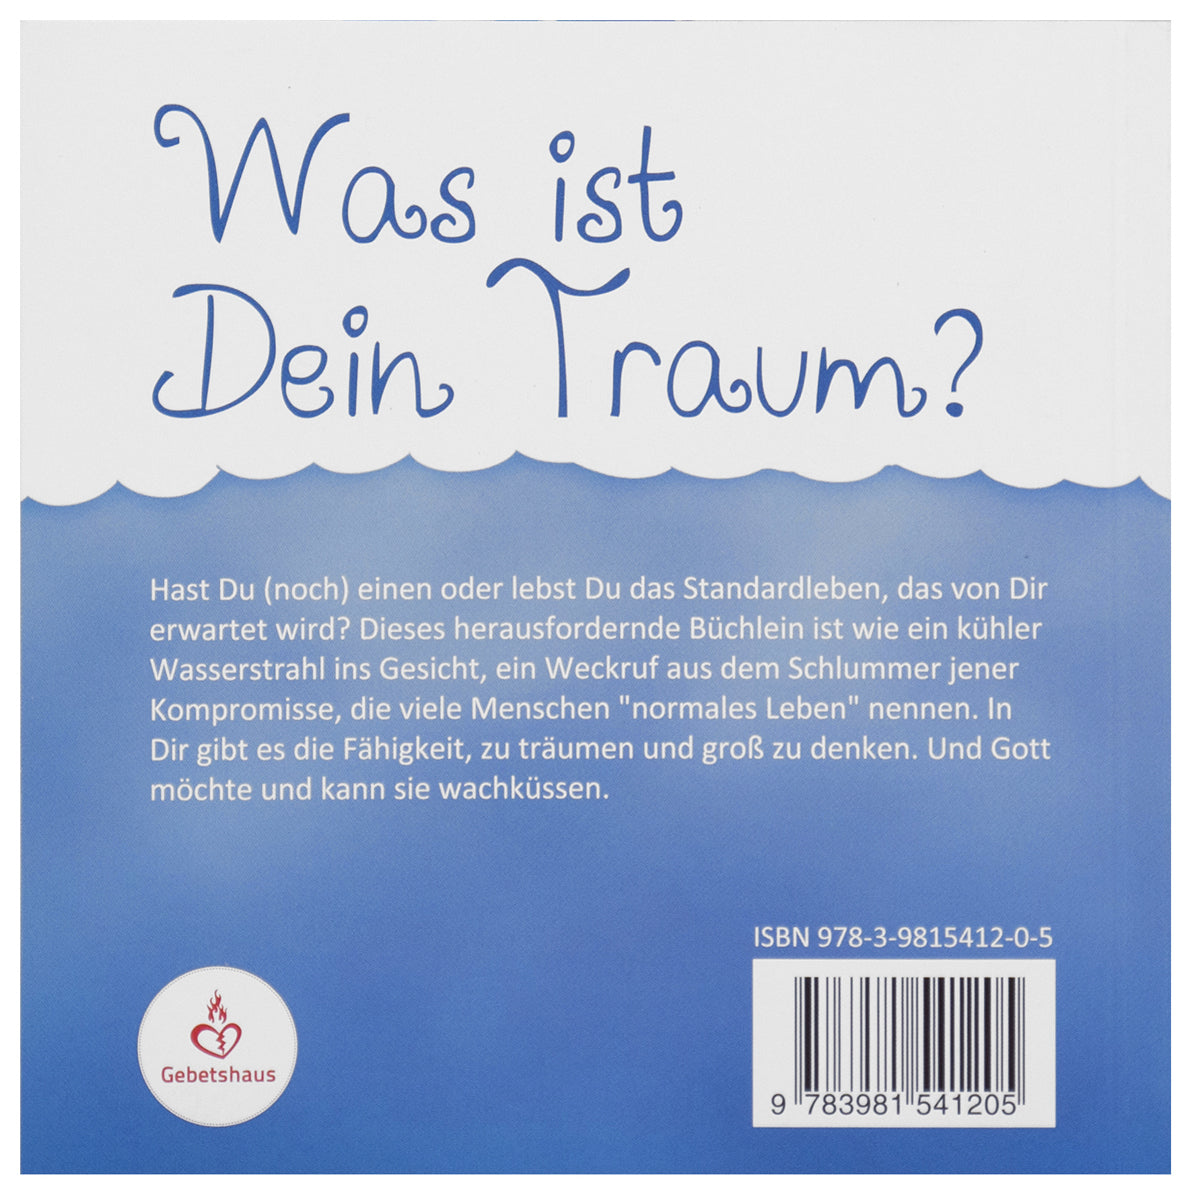 Was ist dein Traum? | Buch - Gebetshaus Augsburg | Shop